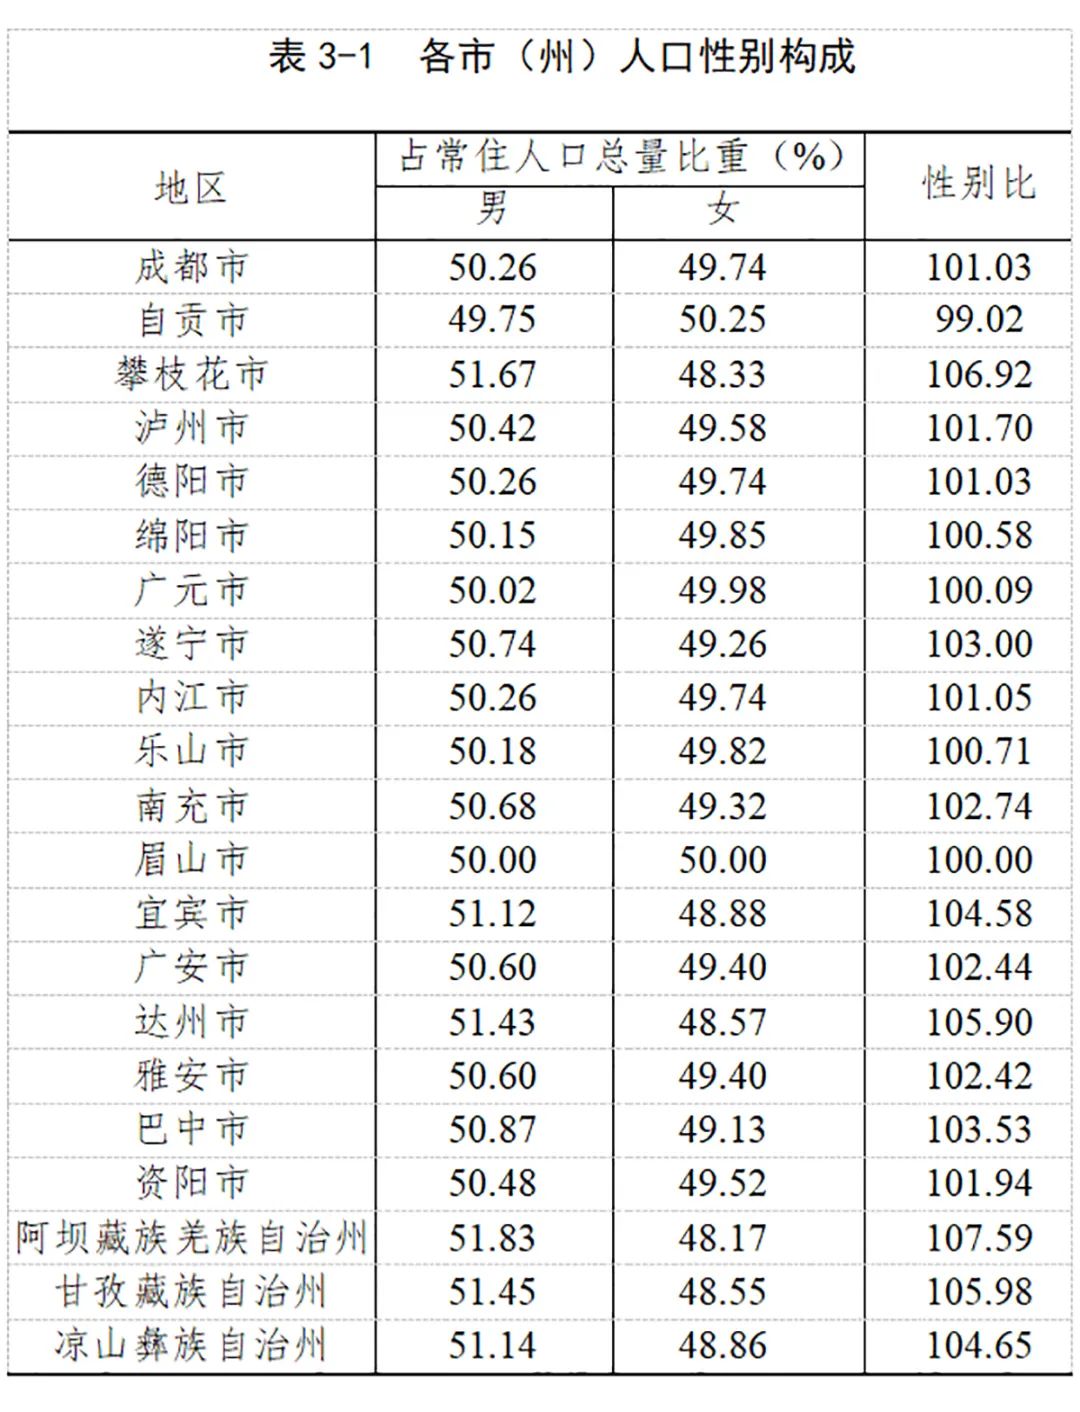 成都区县人口排名图片